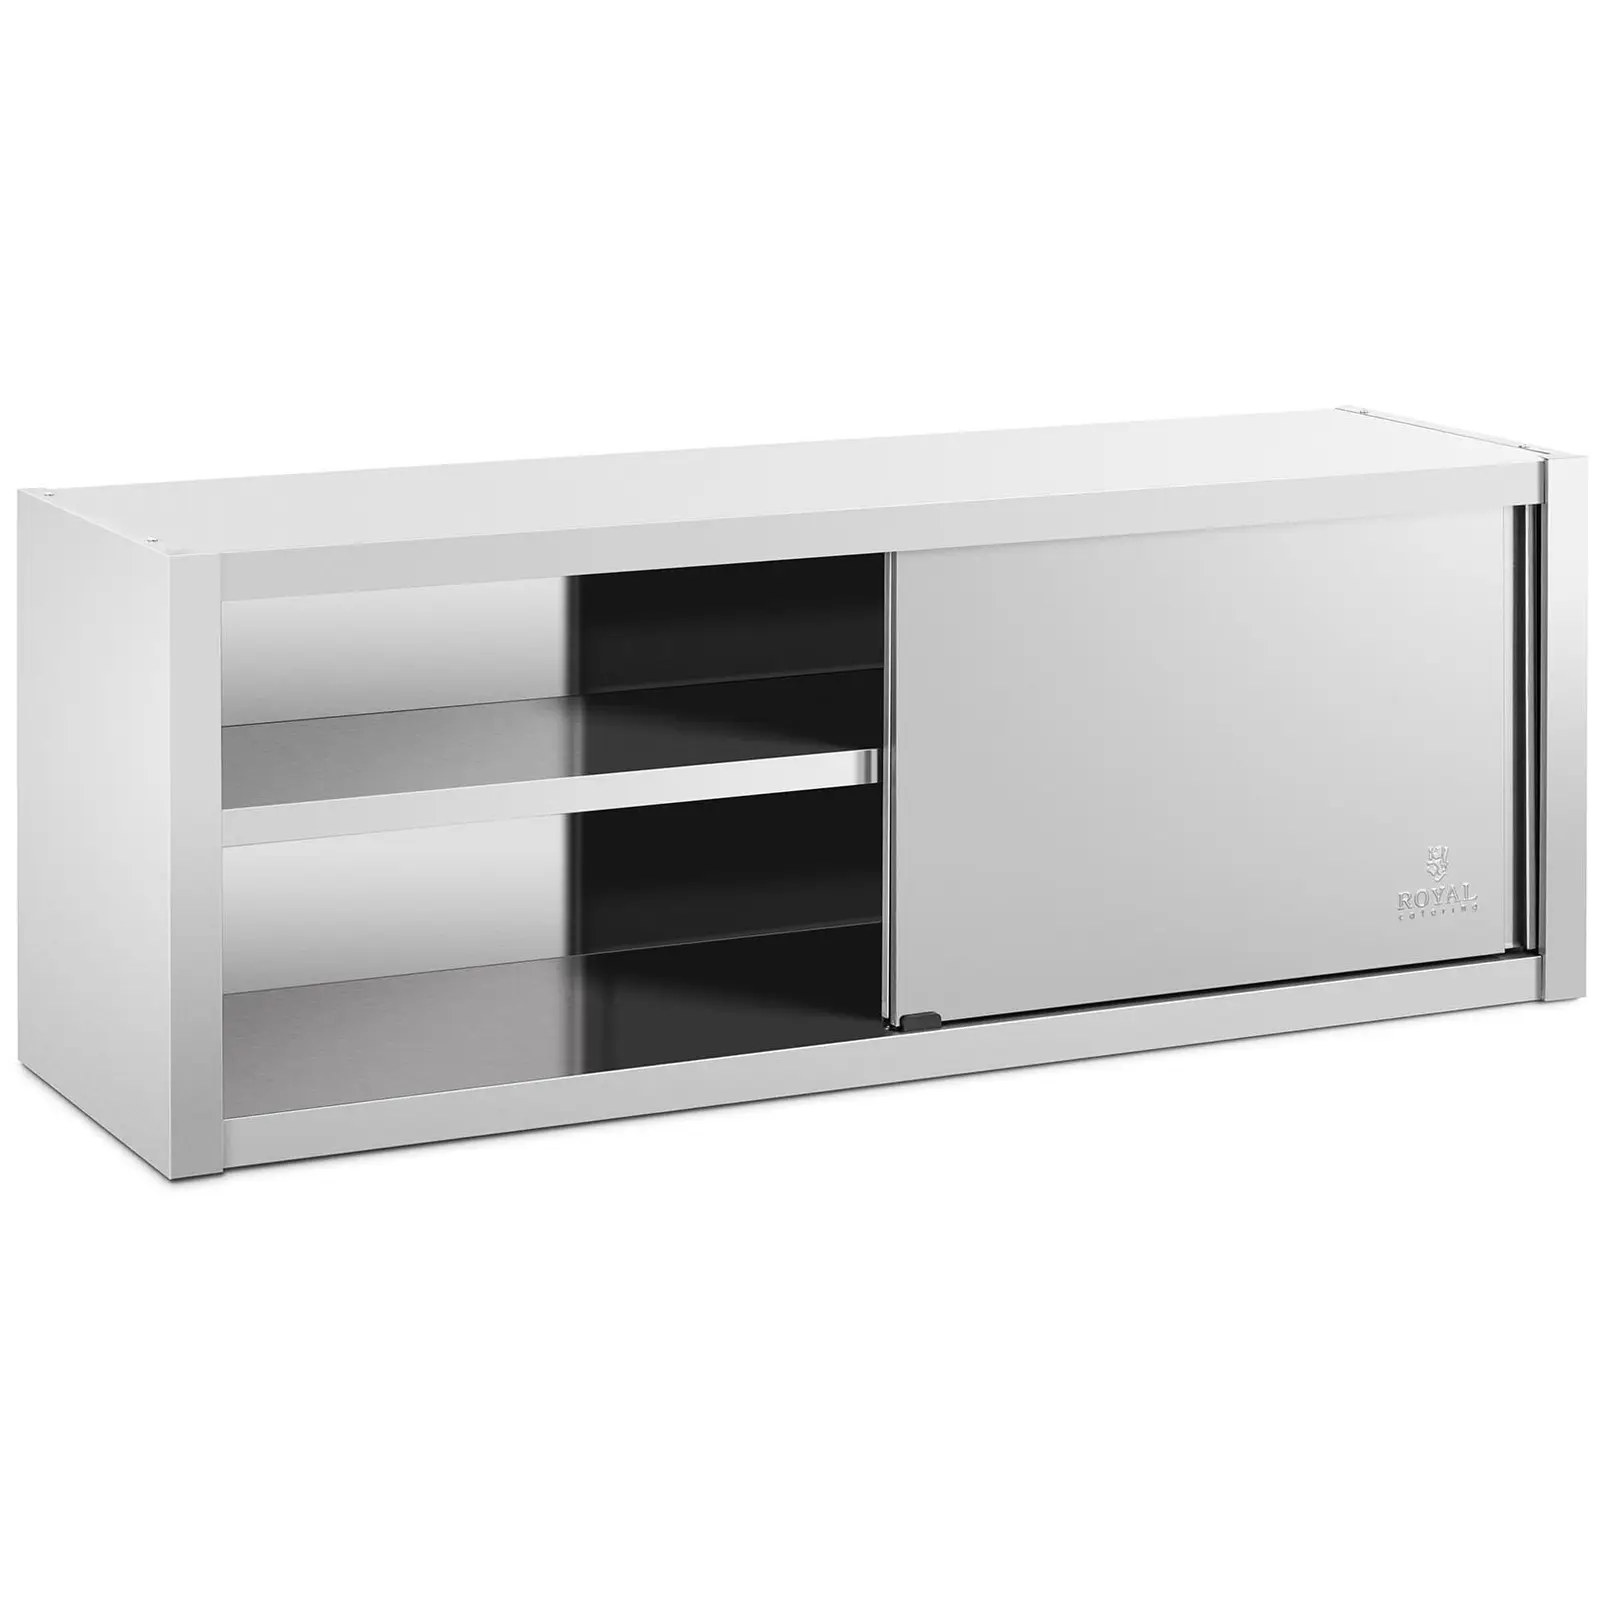 Κρεμαστό ντουλάπι από ανοξείδωτο ατσάλι - 160 x 45 cm